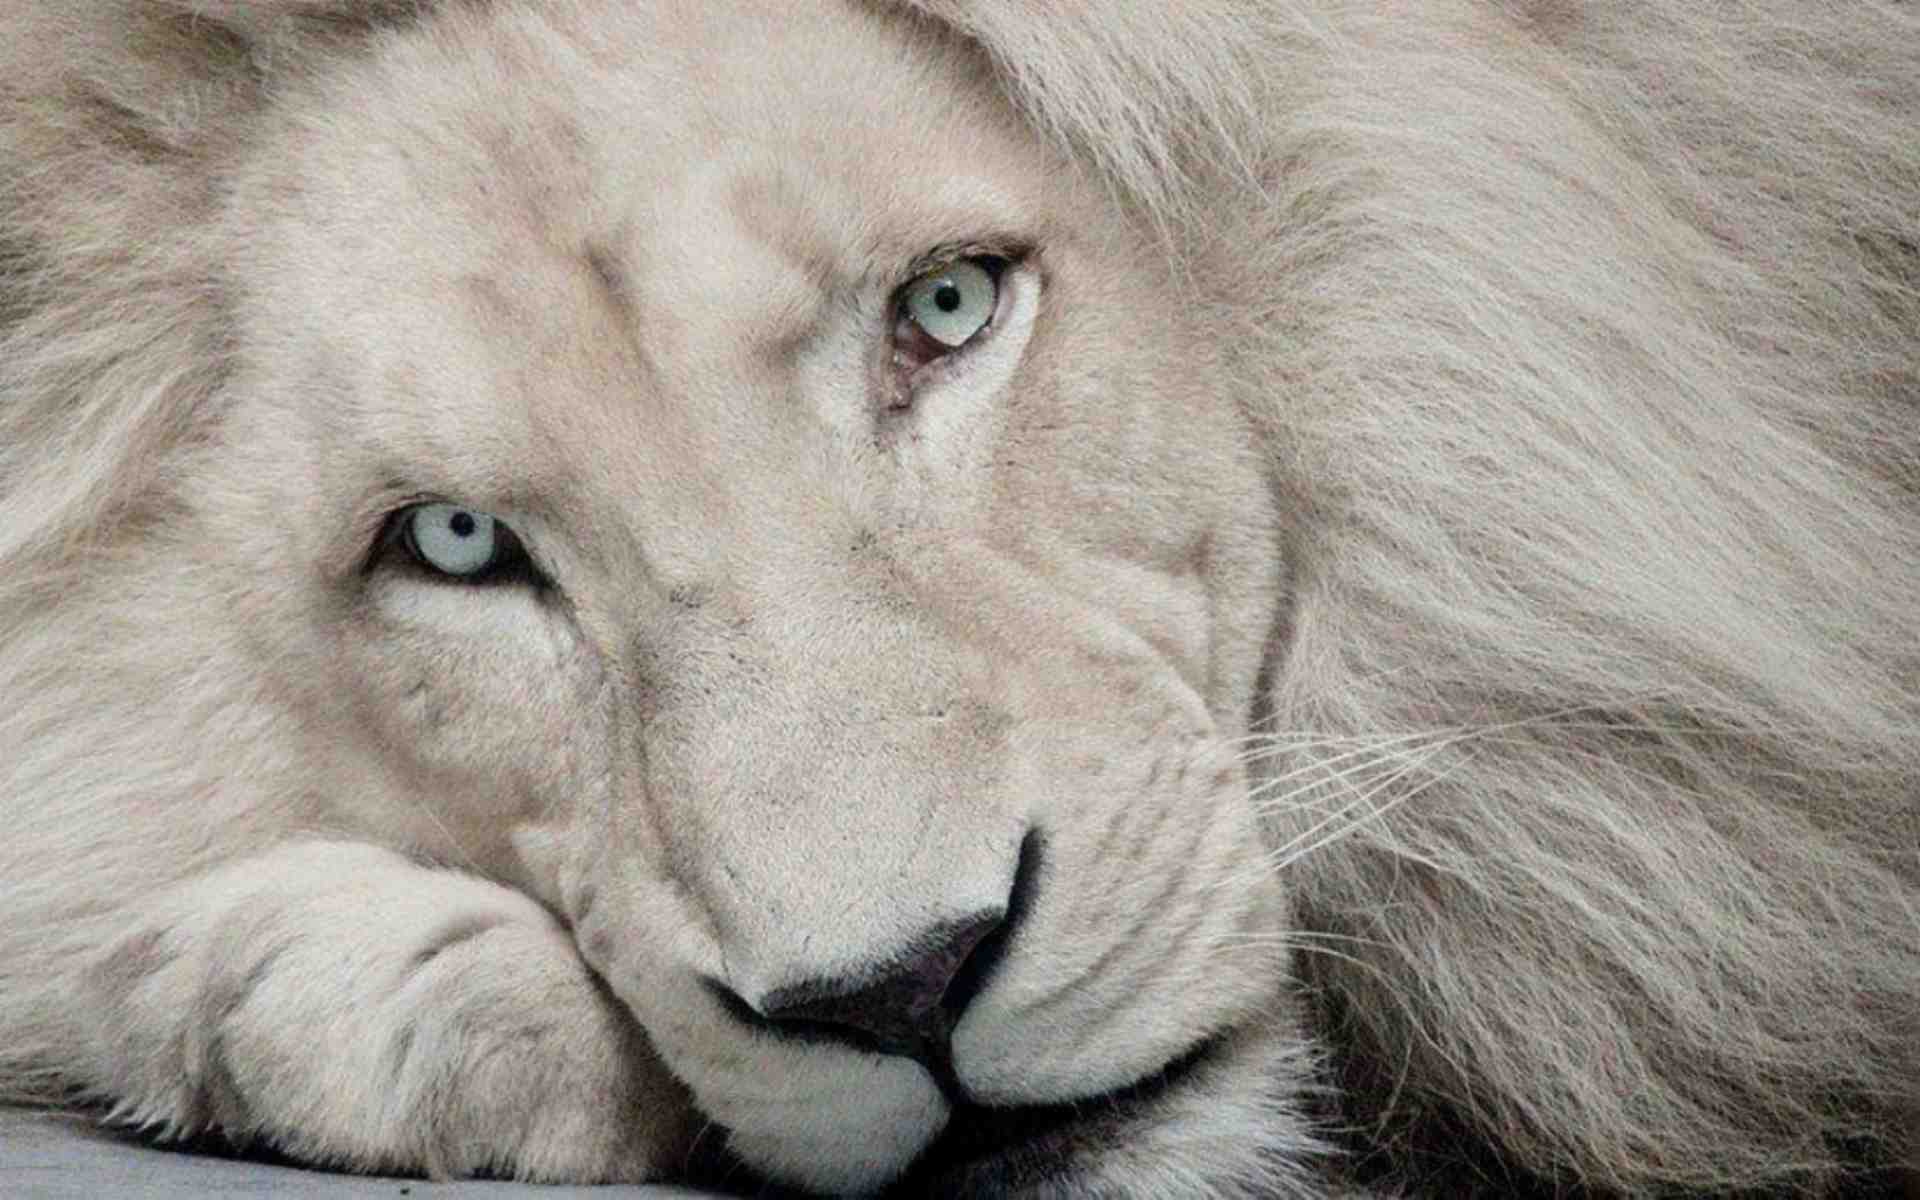 White Lion #2